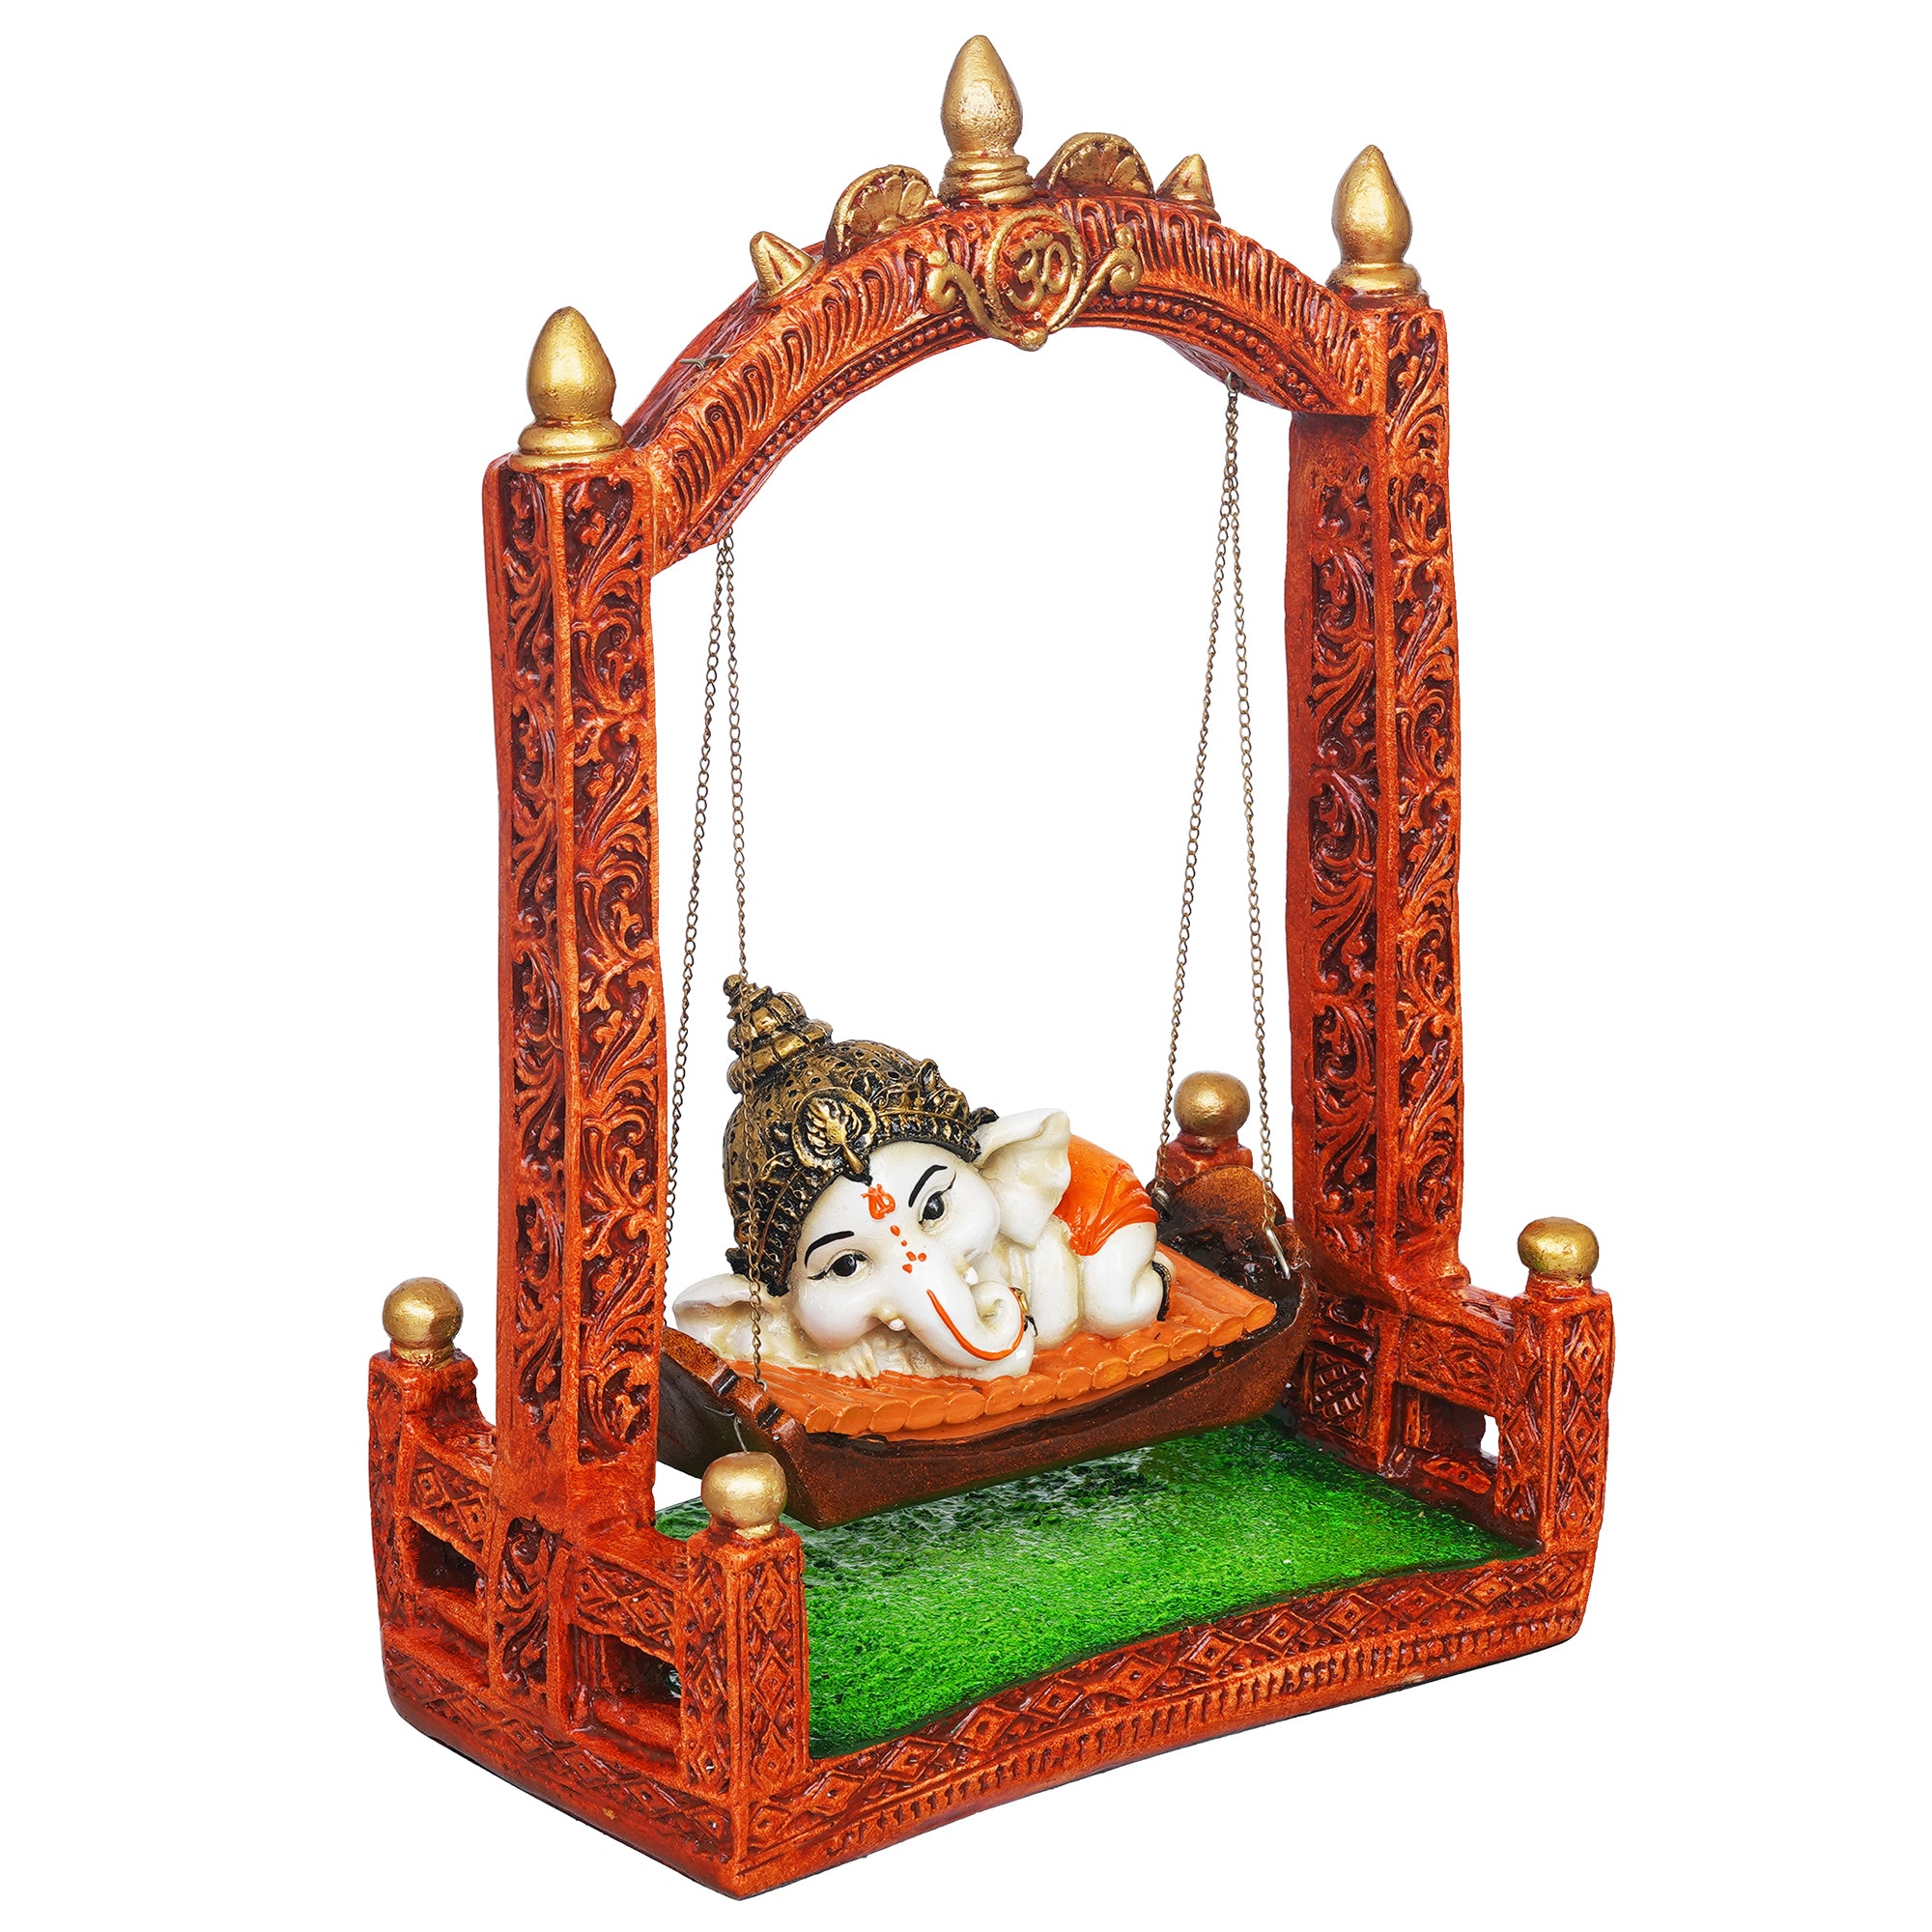 eCraftIndia Multicolor Polyresin Lord Ganesha Idol Resting On A Swing Decorative Showpiece 6